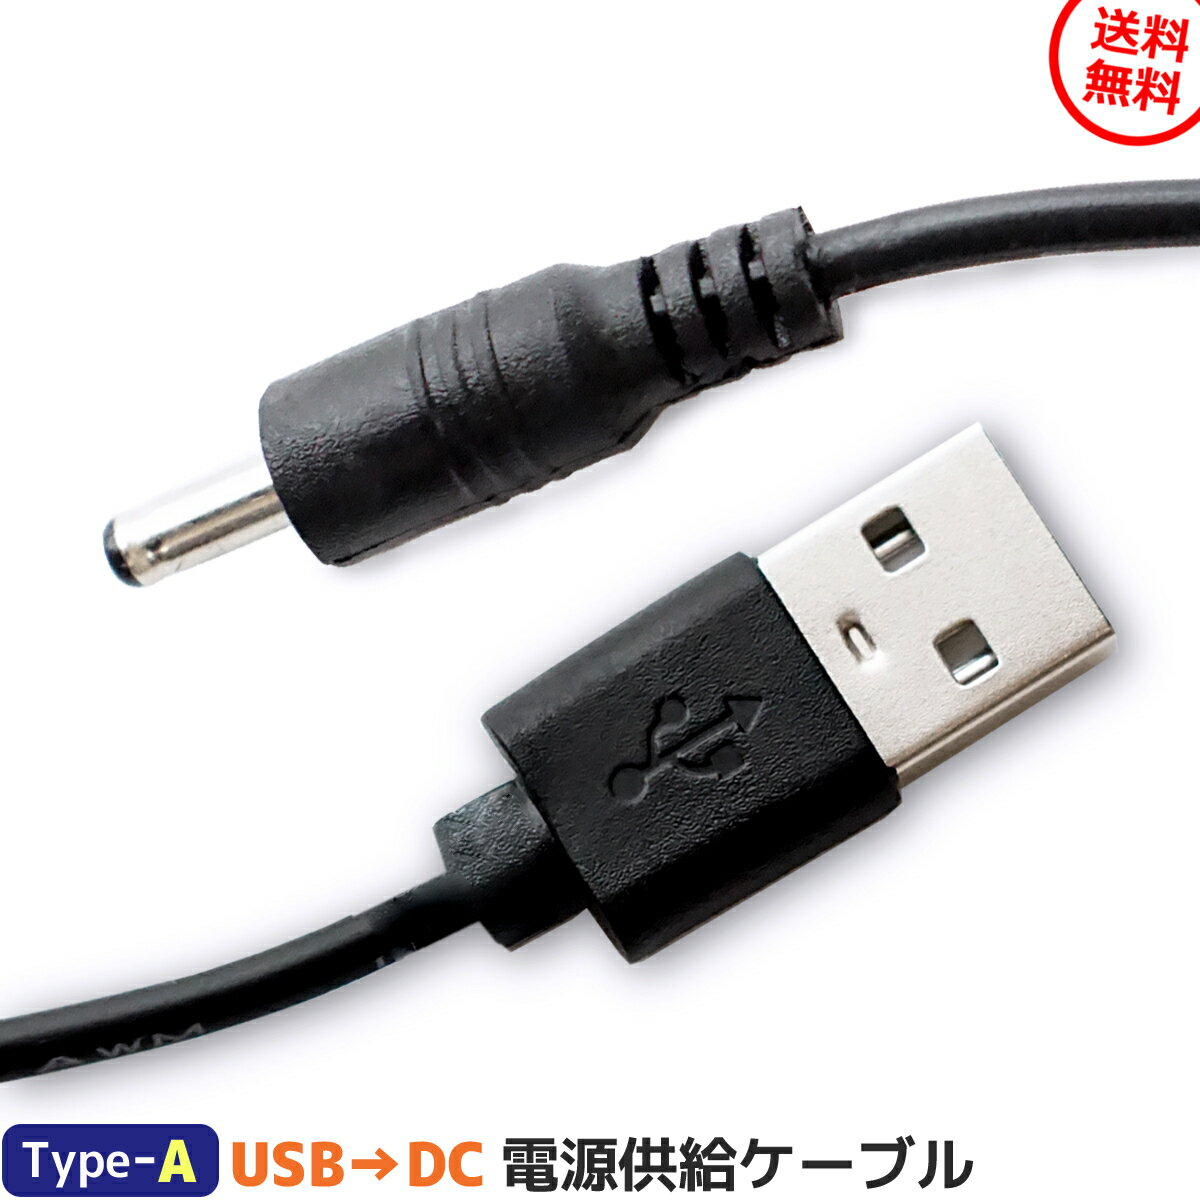 USBコード USB コード DC電源 DCプラグ 端子外径 3.5mm 端子内径 1.35mm 81cm 0.5A 対応 給電 充電 ケーブル USBタイプA DC 端子ケーブル